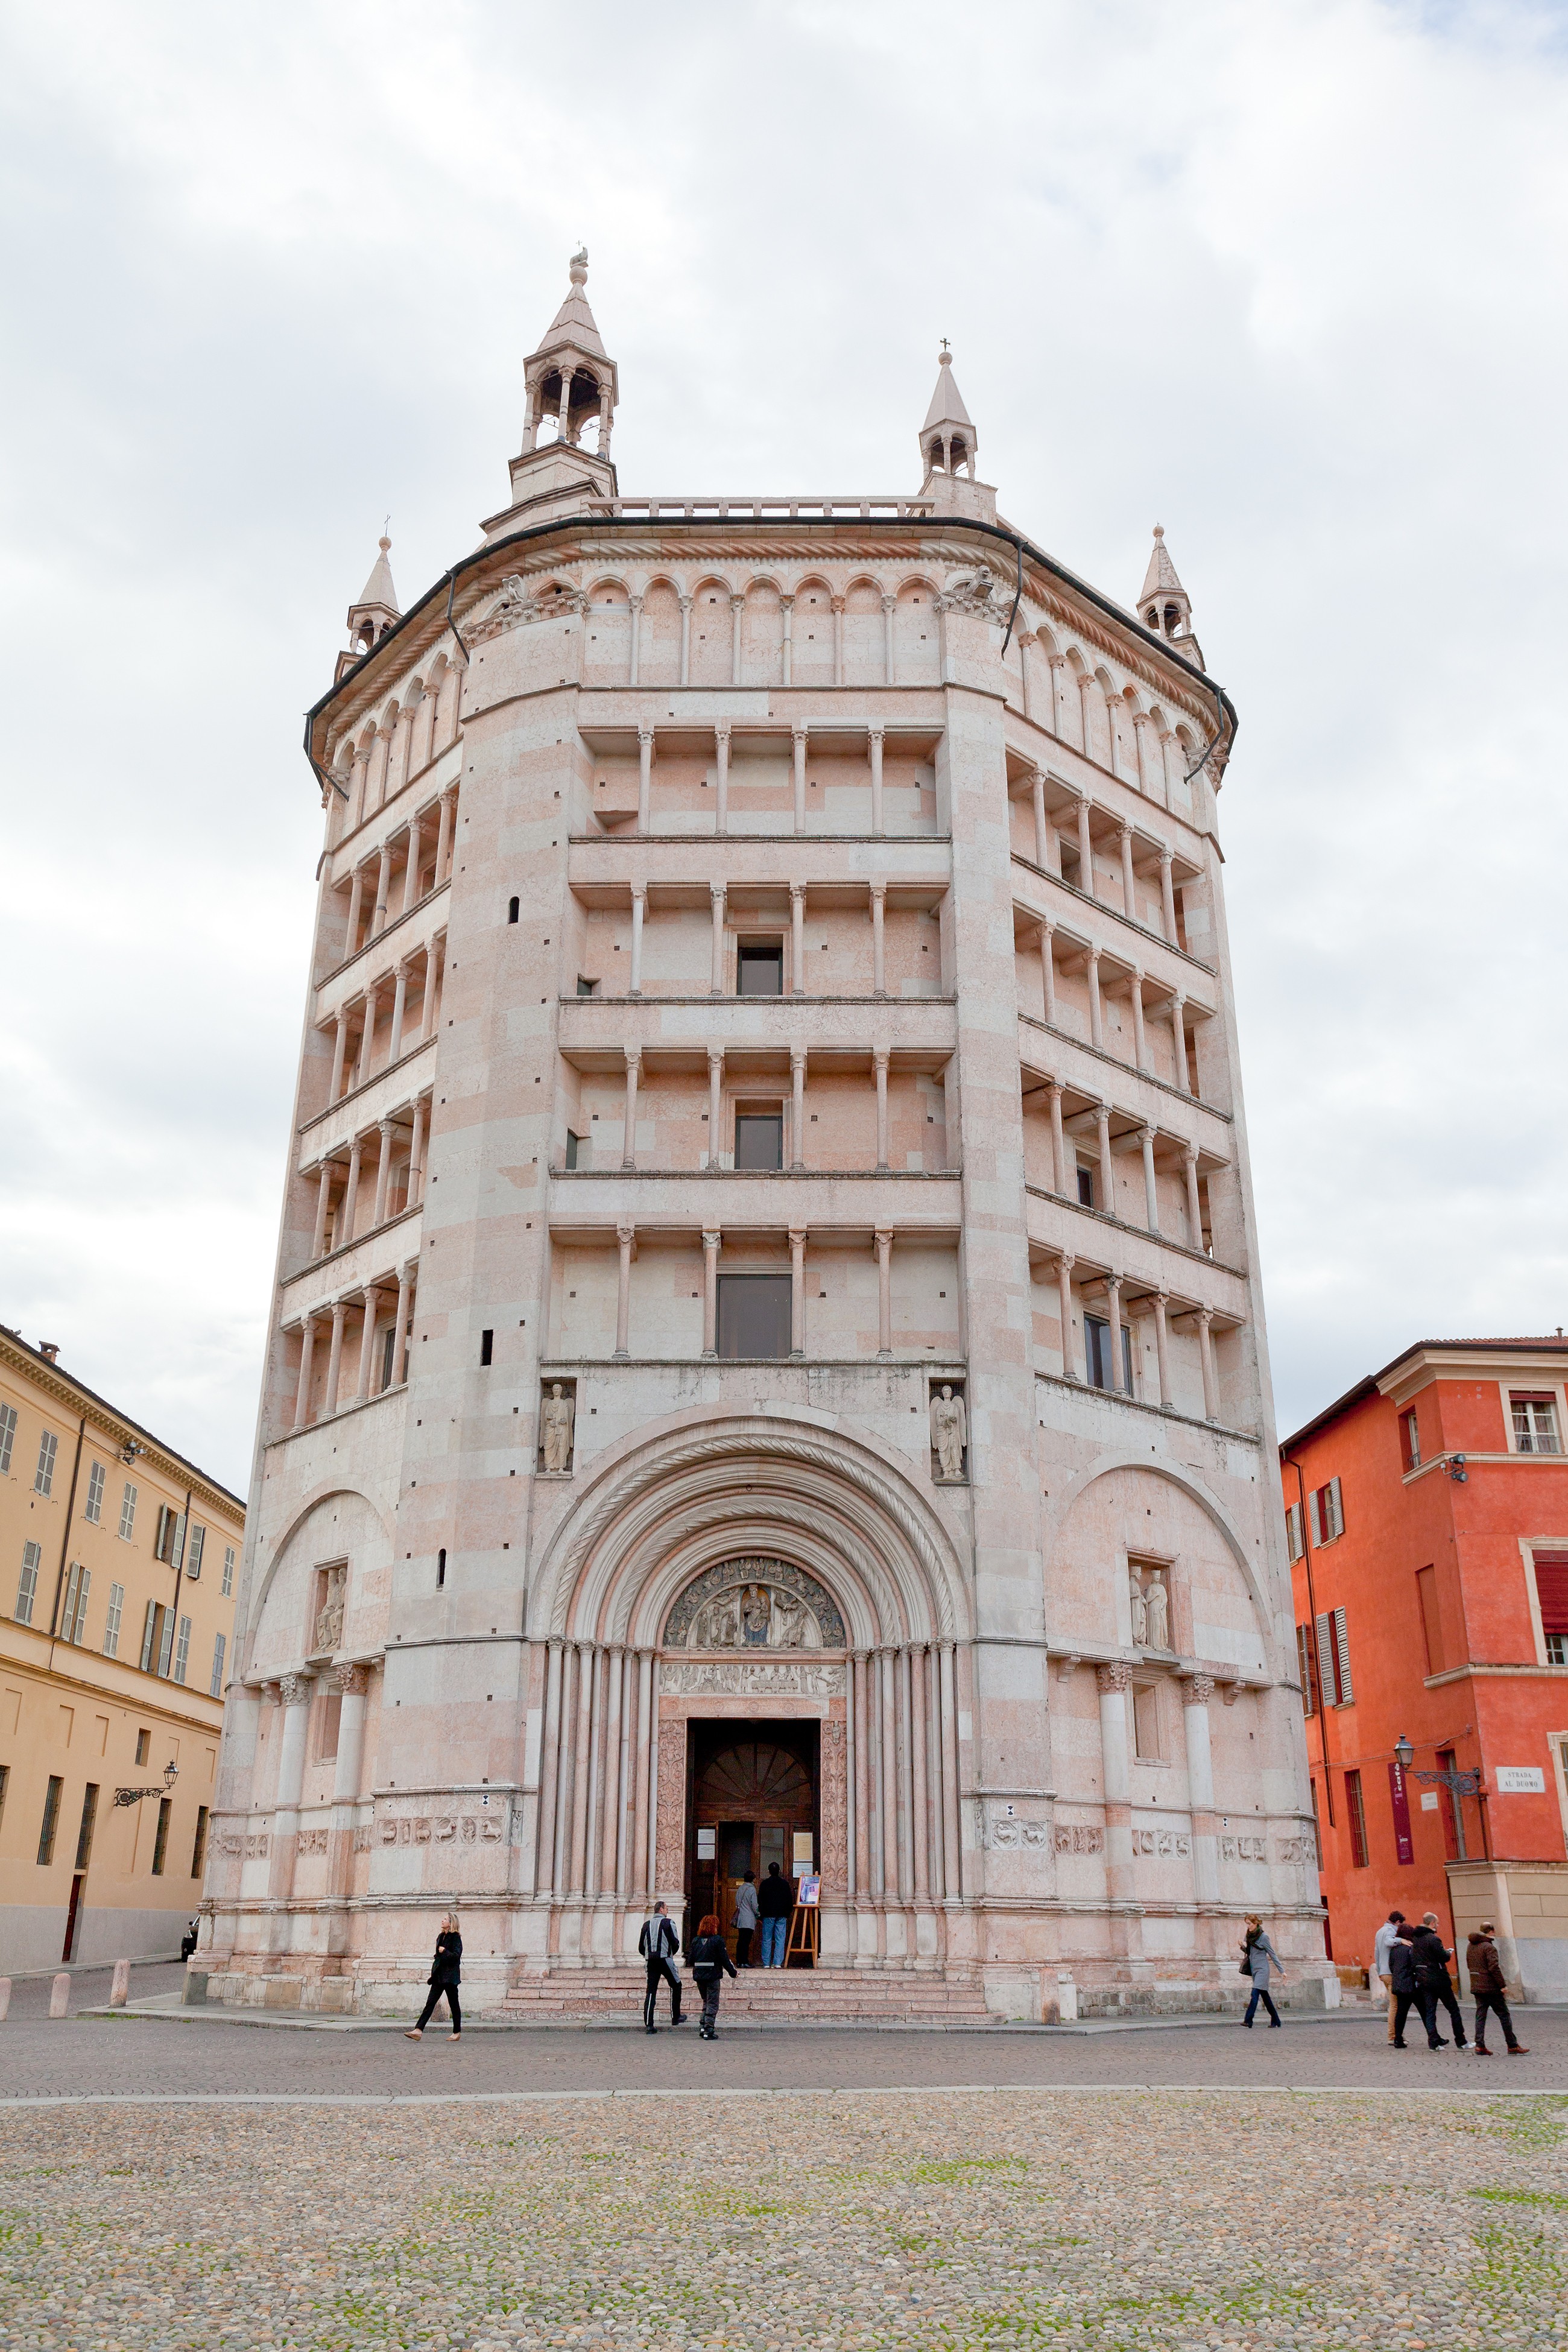 The Baptistery of Parma - Parma - Arrivalguides.com